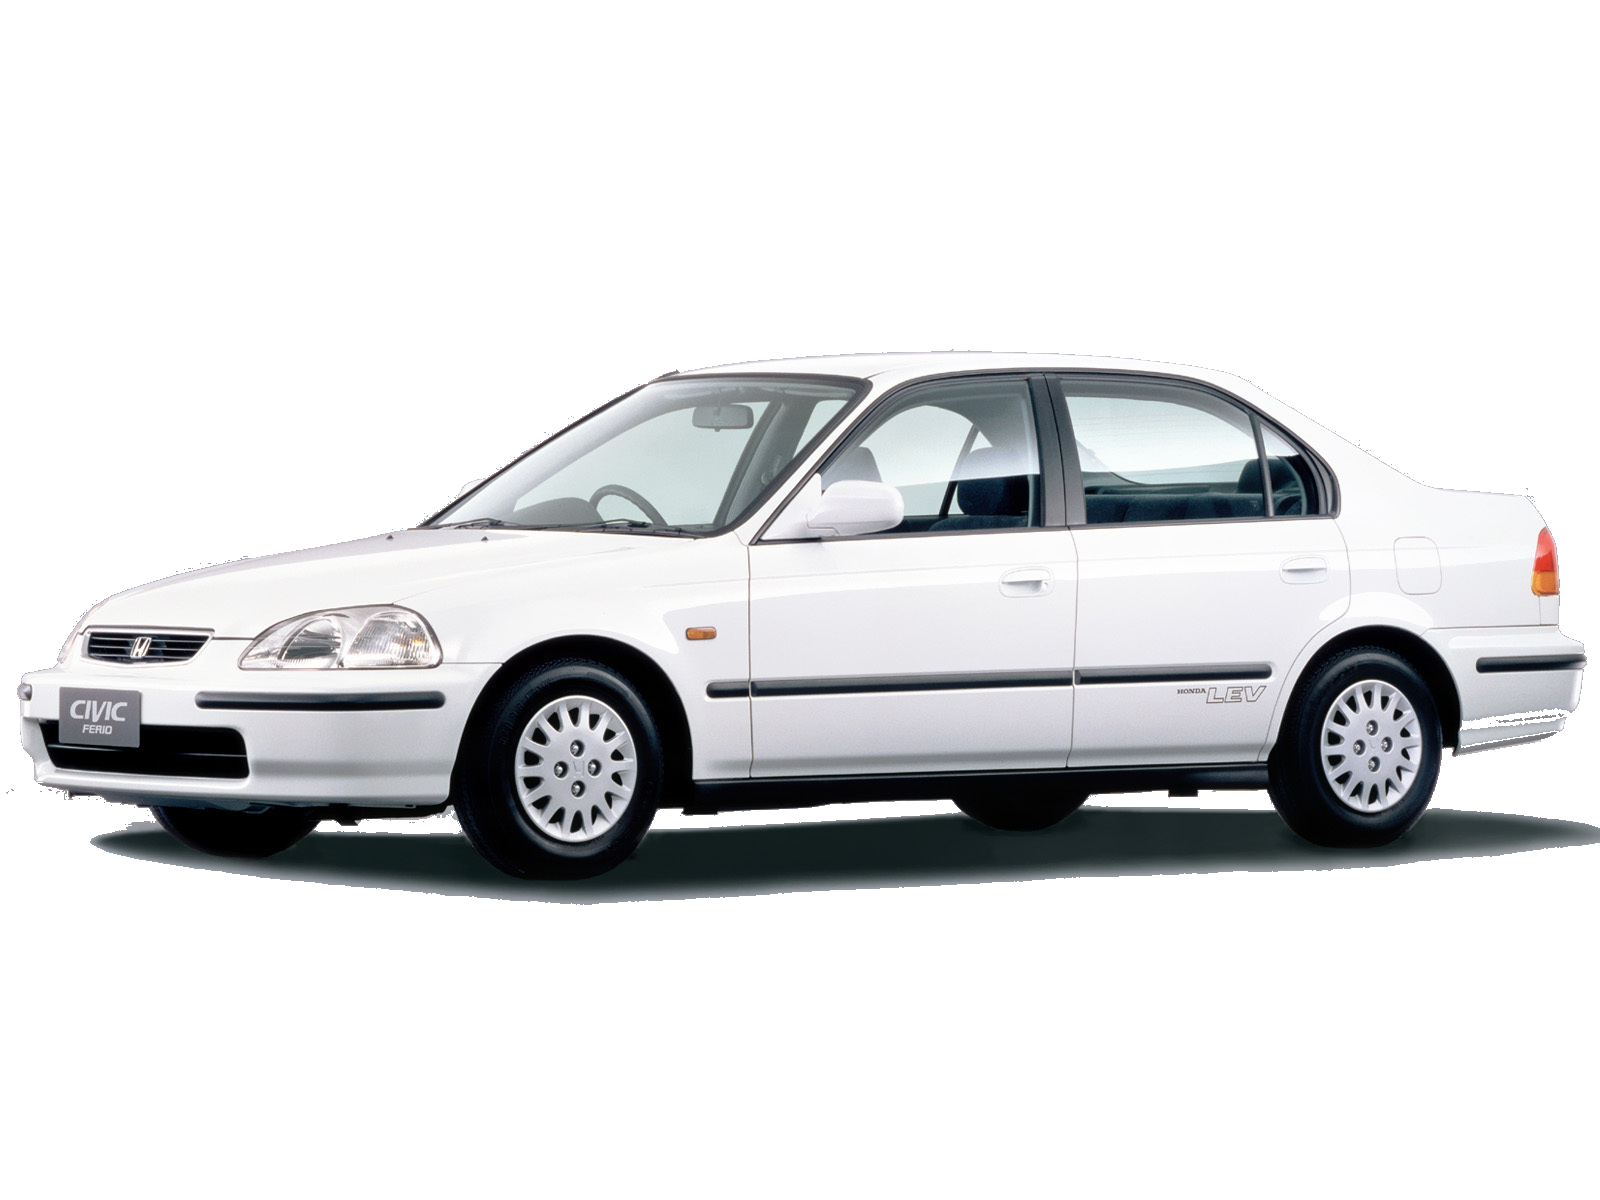 Honda Civic 1995 - 2000 (FERIO S04)